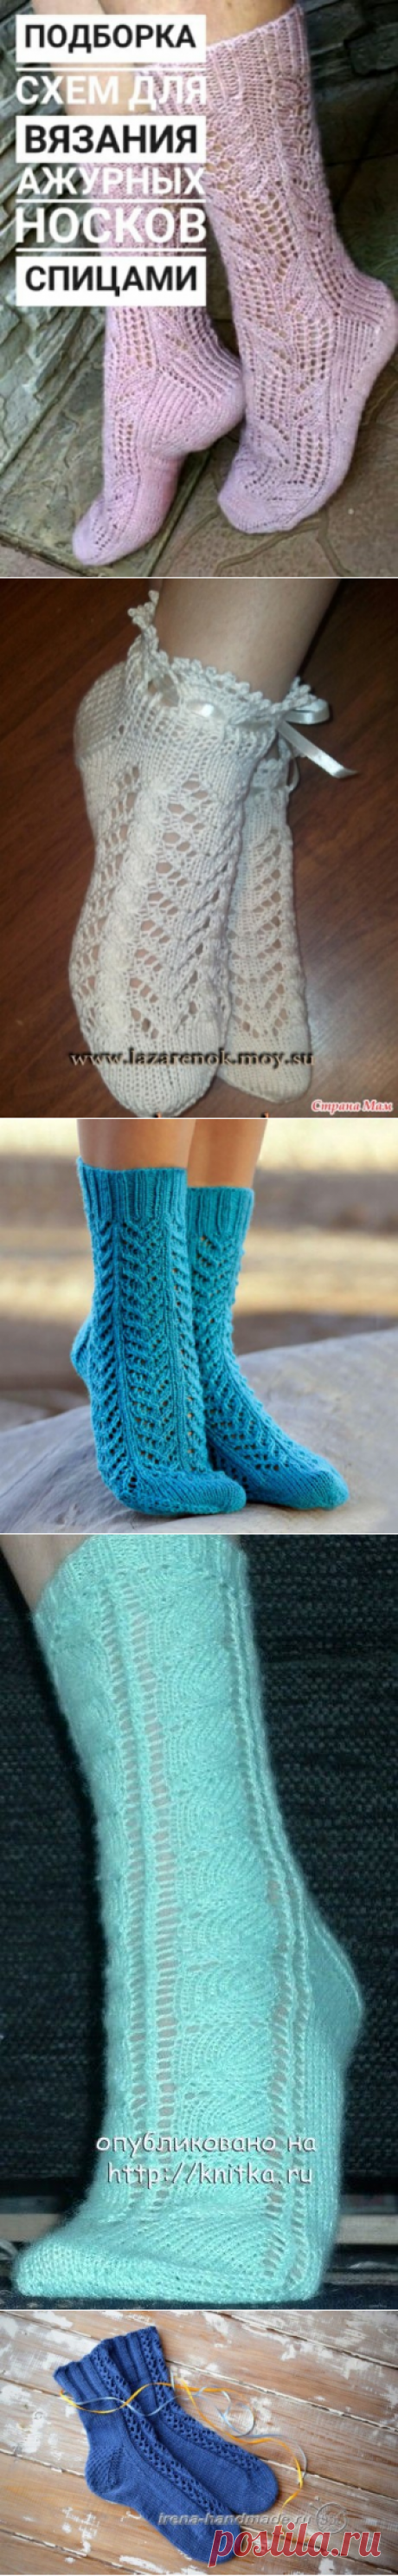 Ажурные носки спицами, 22 авторские схемы вязания и описания носков, Вязание для детей